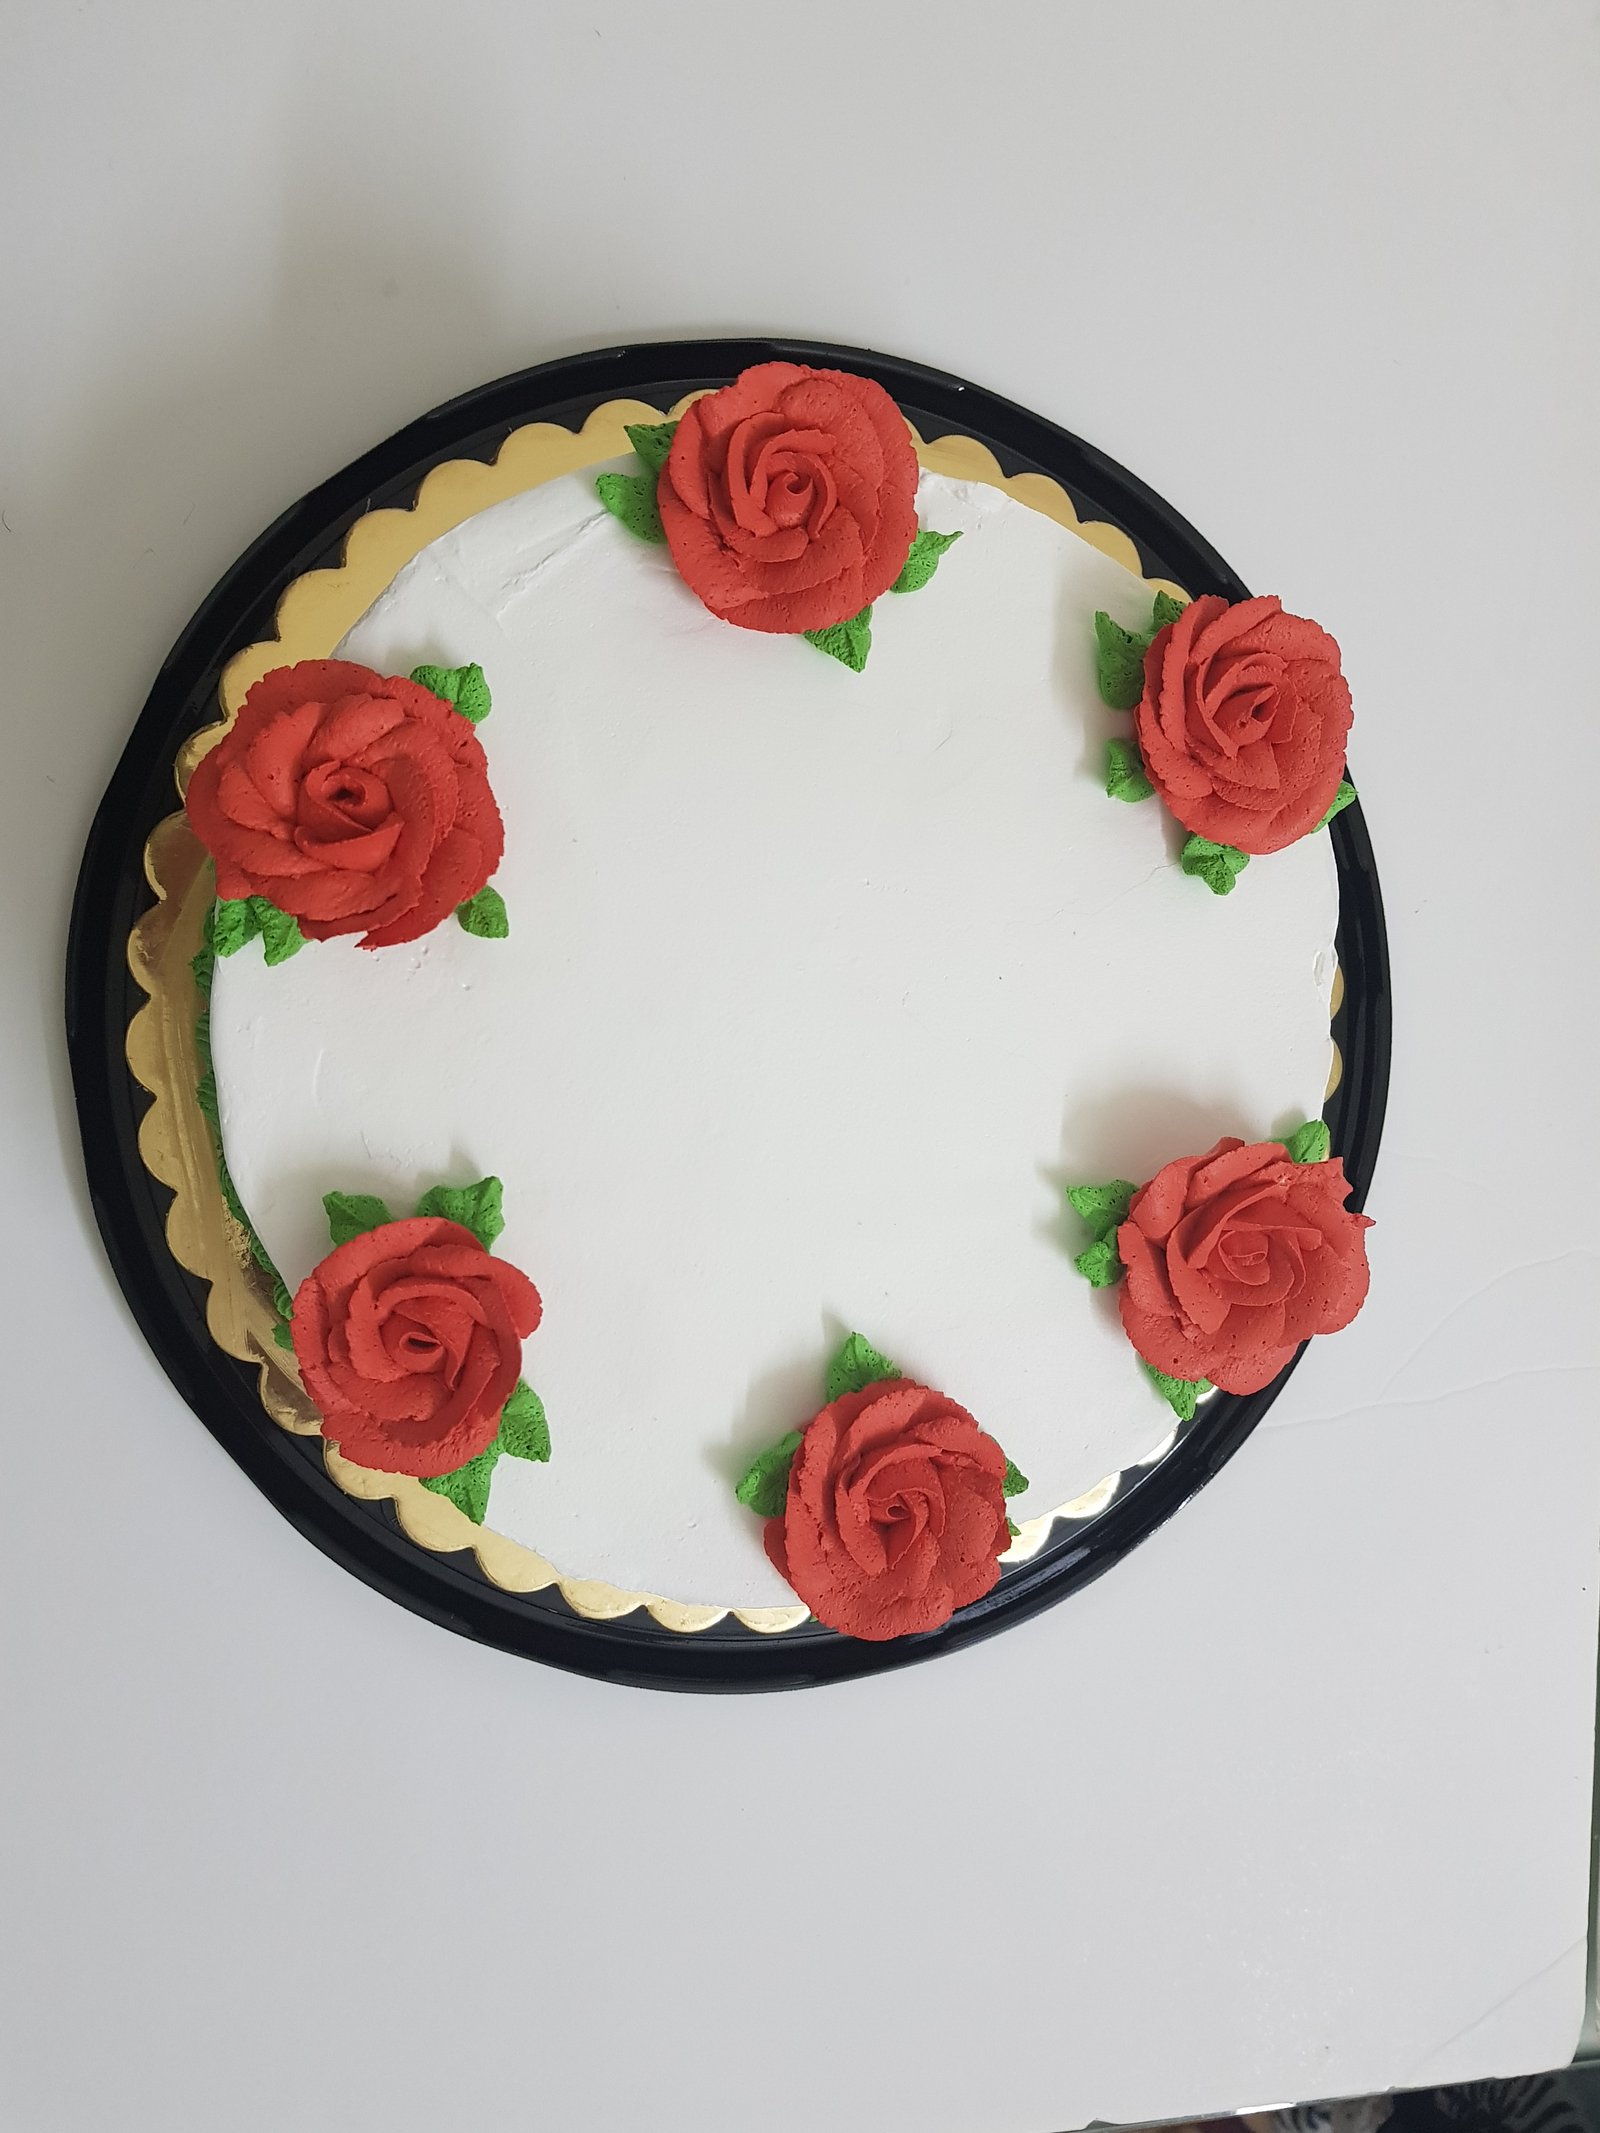 Red Flower Cake - Decorated Cake by rincondulcebysusana - CakesDecor